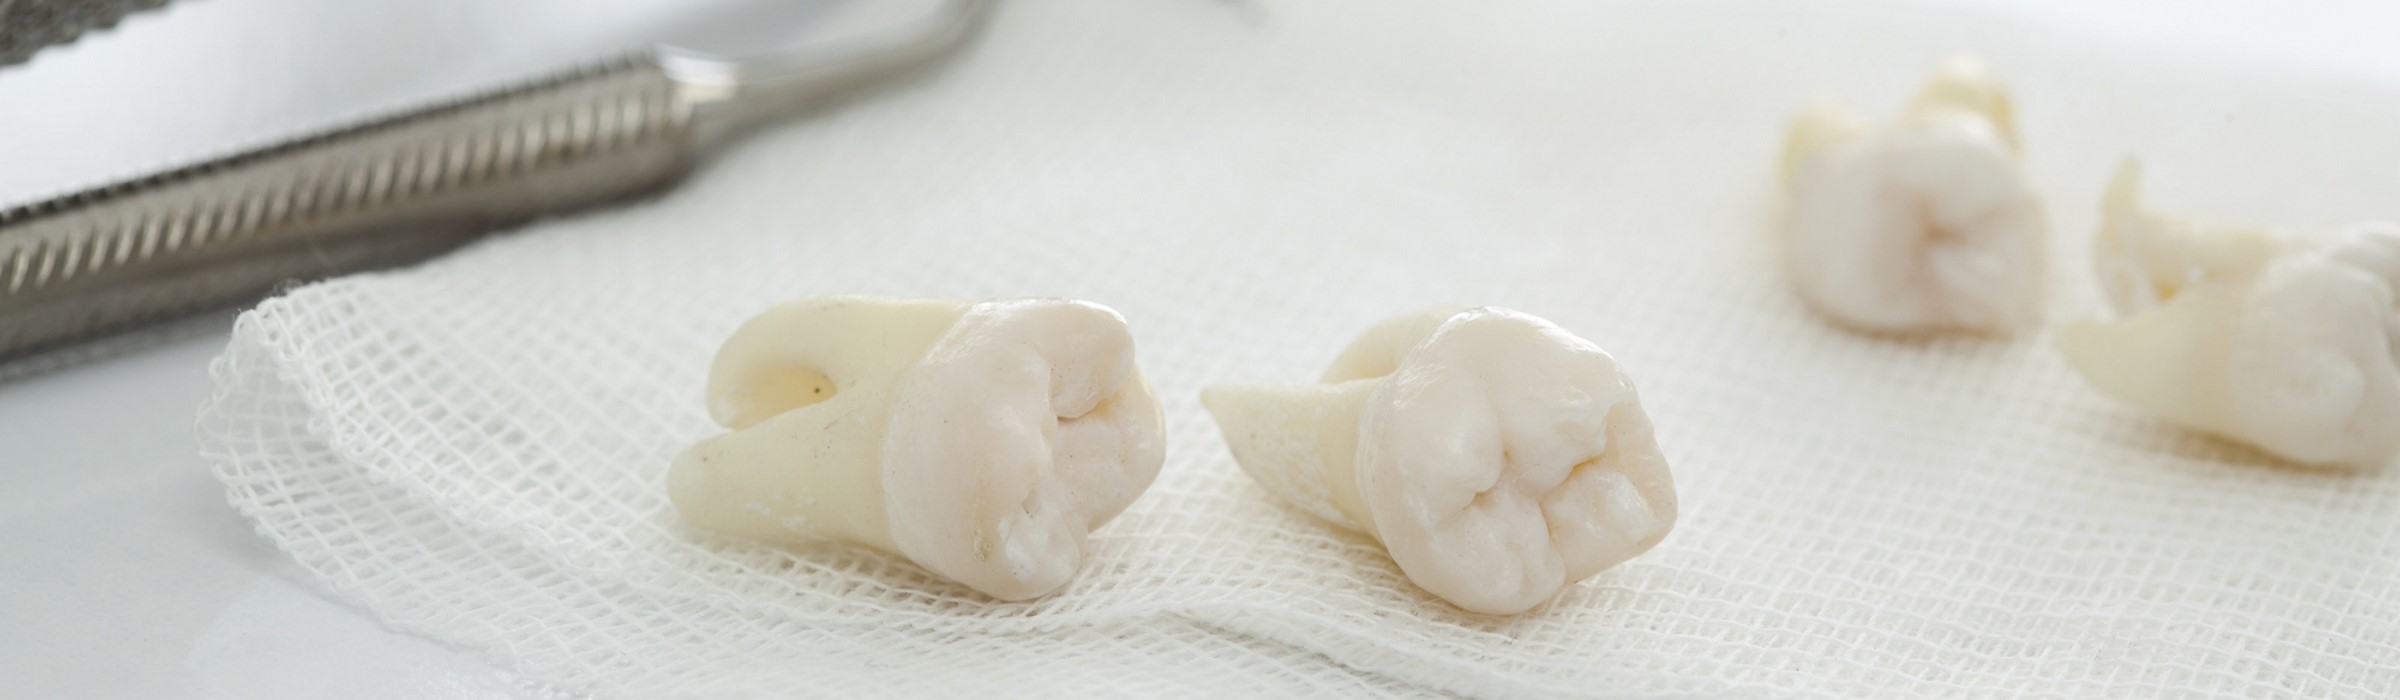 Zahn ziehen – Gründe, Ablauf und Tipps für eine schnelle Wundheilung nach einer Zahnextraktion